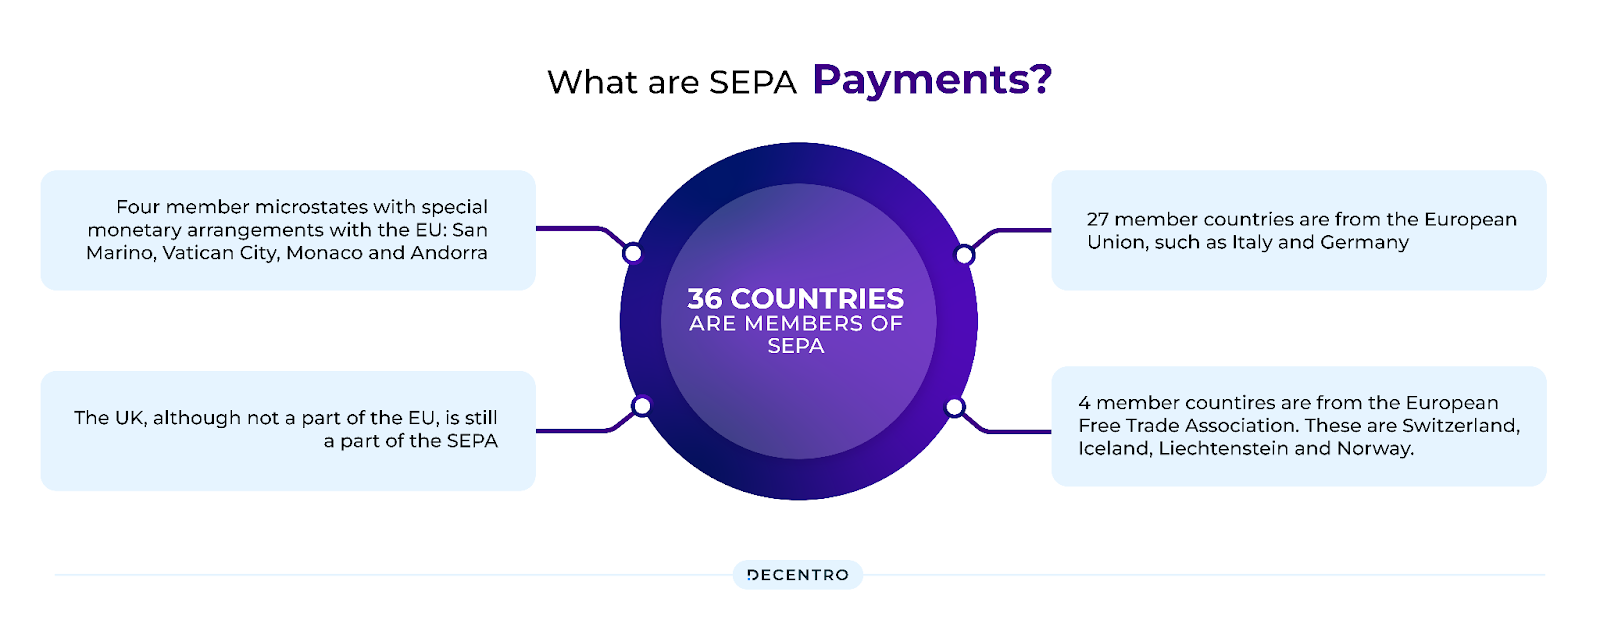 SEPA Payments Flow